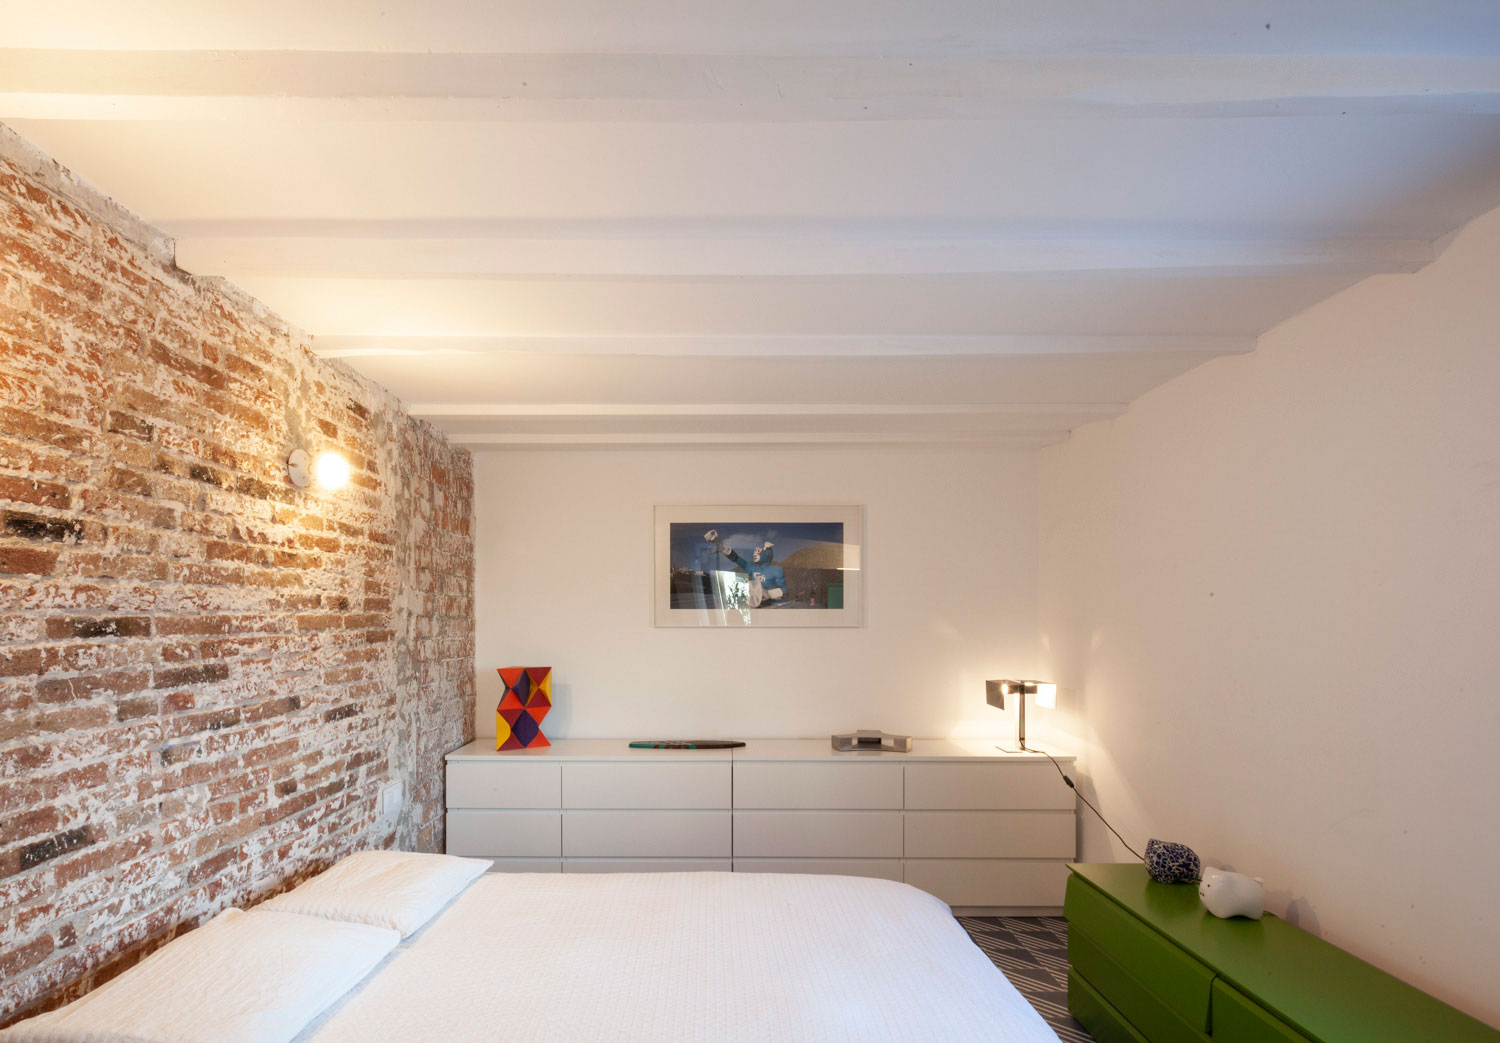 住宅空间，建筑改造，loft公寓，生活工作空间，巴塞罗那